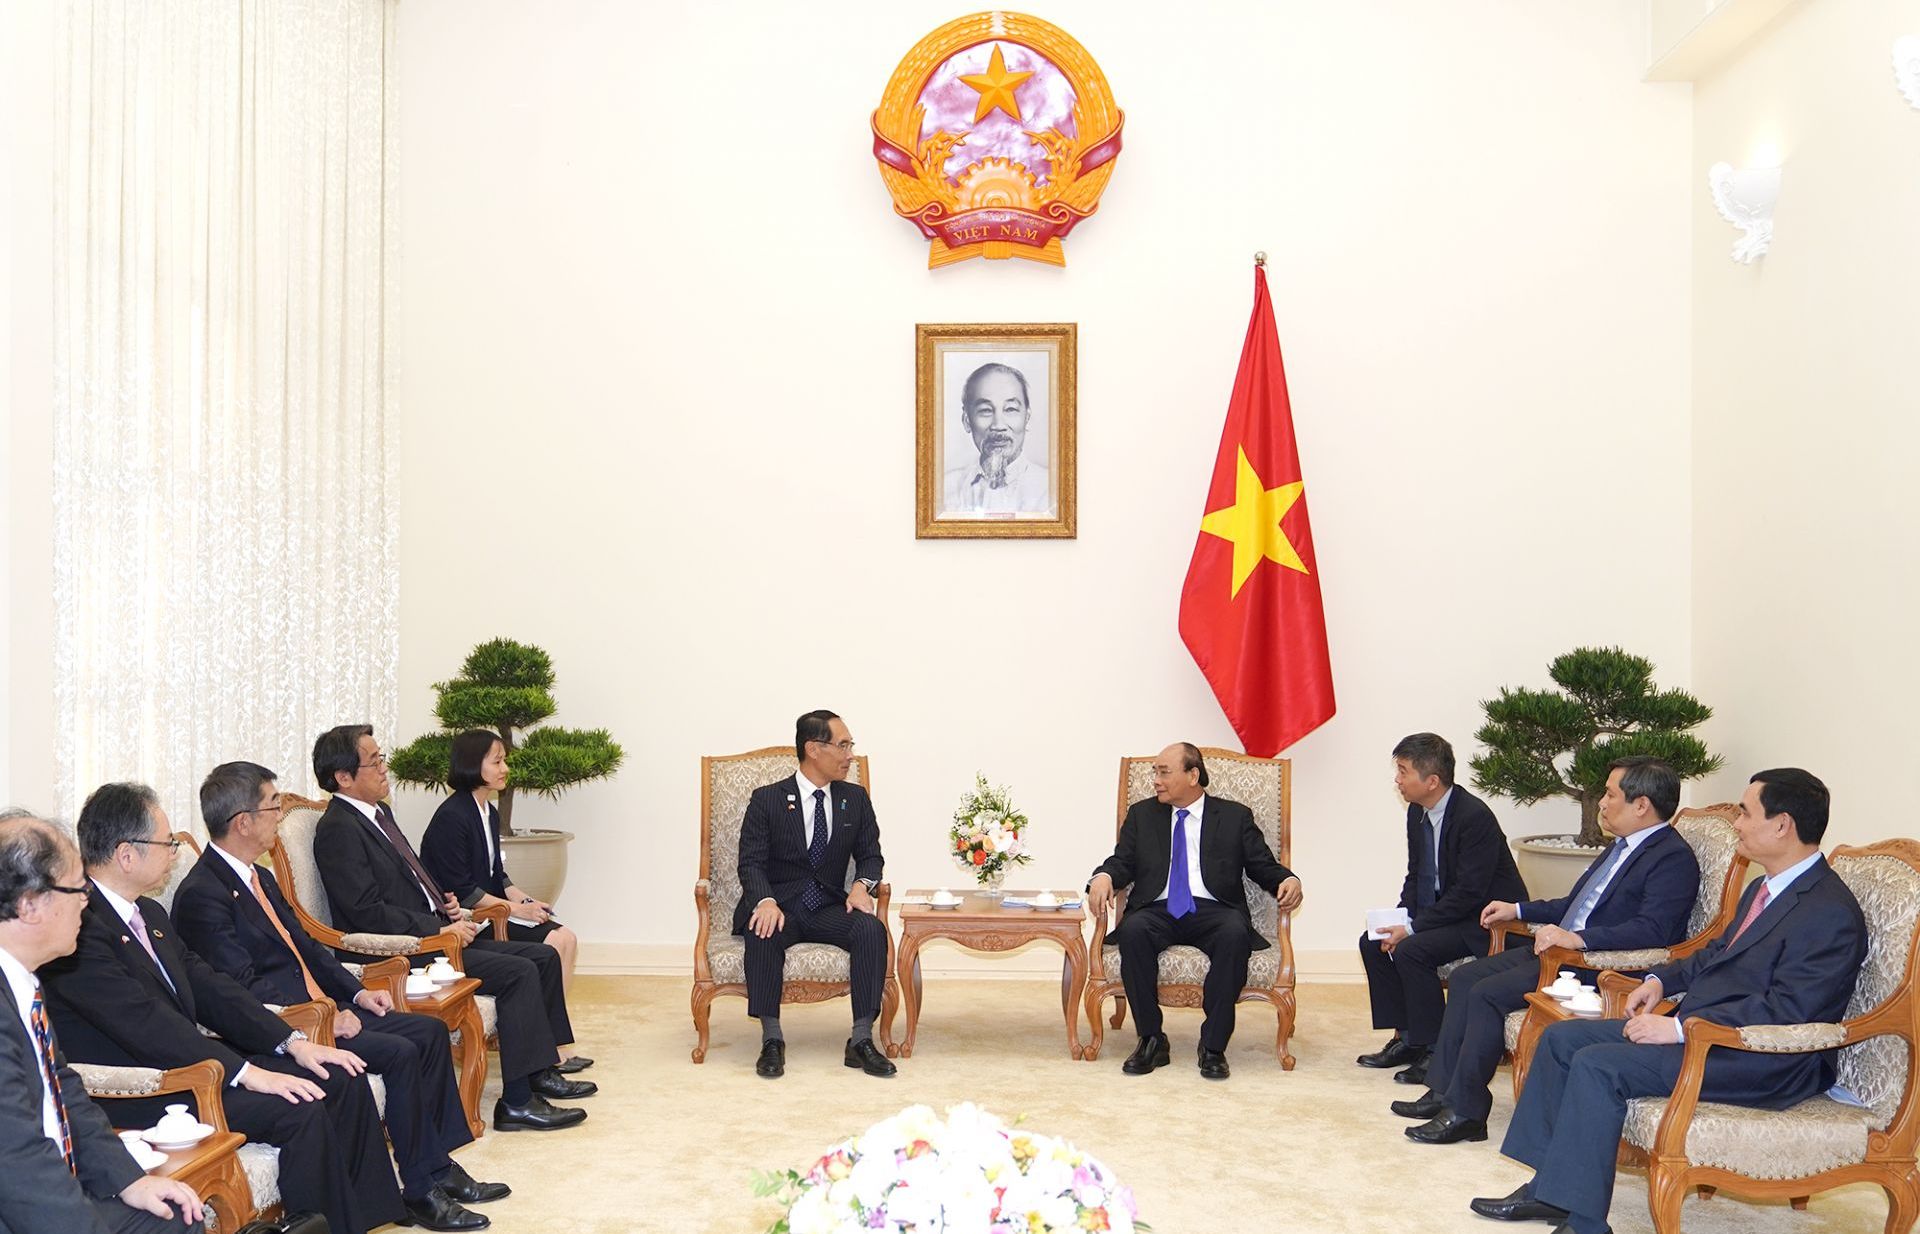 Thủ tướng mong muốn Nhật Bản vươn lên dẫn đầu về đầu tư, thương mại với Việt Nam